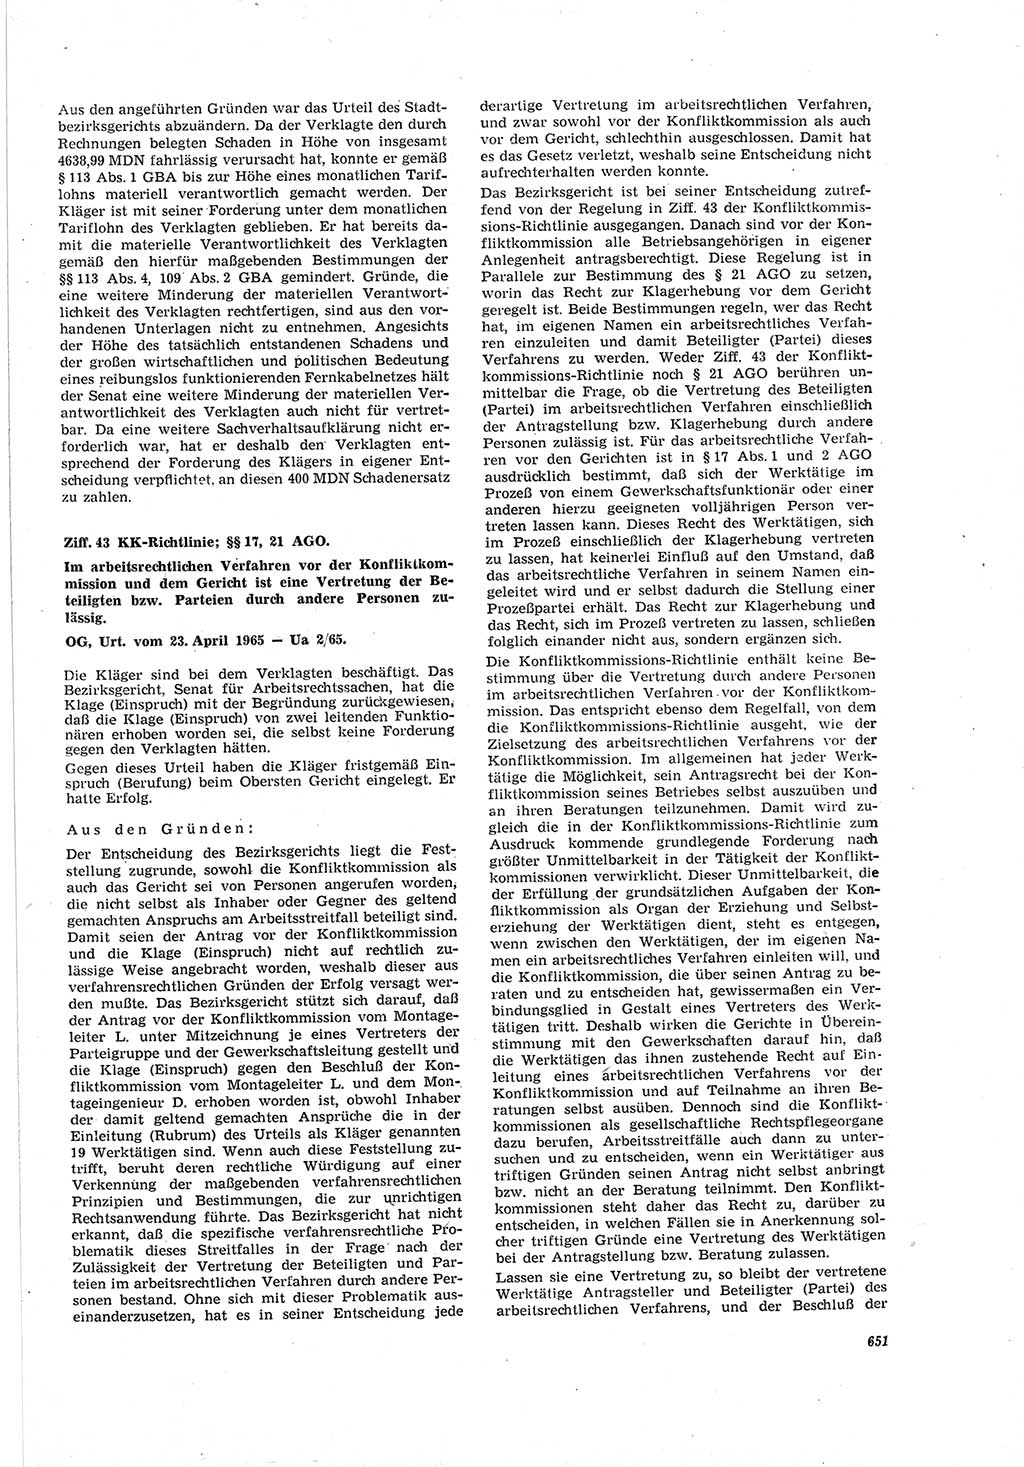 Neue Justiz (NJ), Zeitschrift für Recht und Rechtswissenschaft [Deutsche Demokratische Republik (DDR)], 19. Jahrgang 1965, Seite 651 (NJ DDR 1965, S. 651)